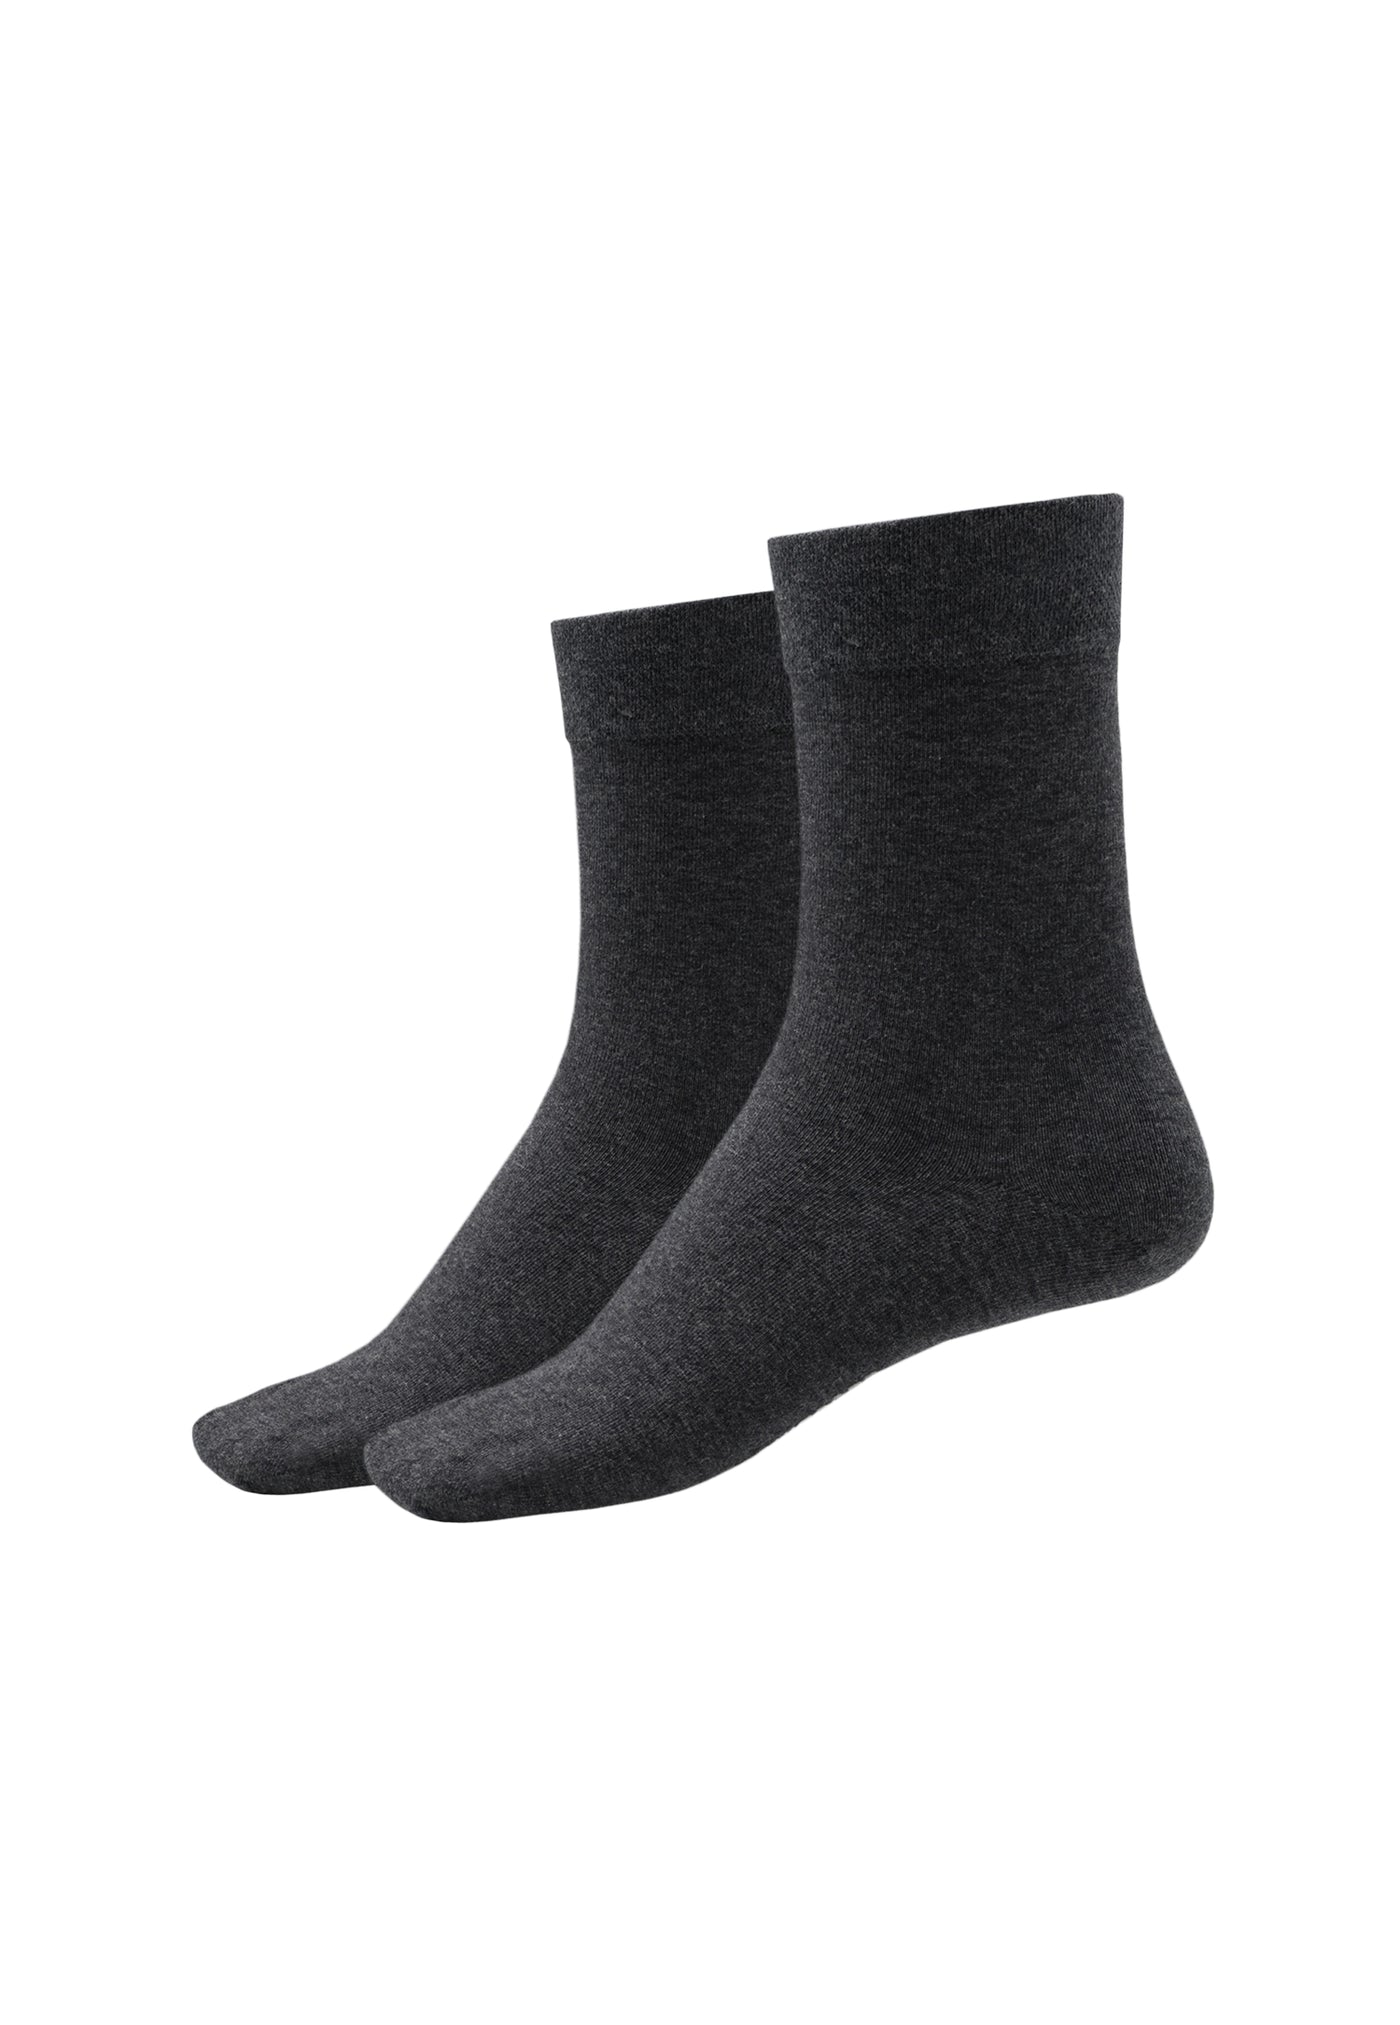 Schiesser - Long Life Cool - Women Socks 2 Pack